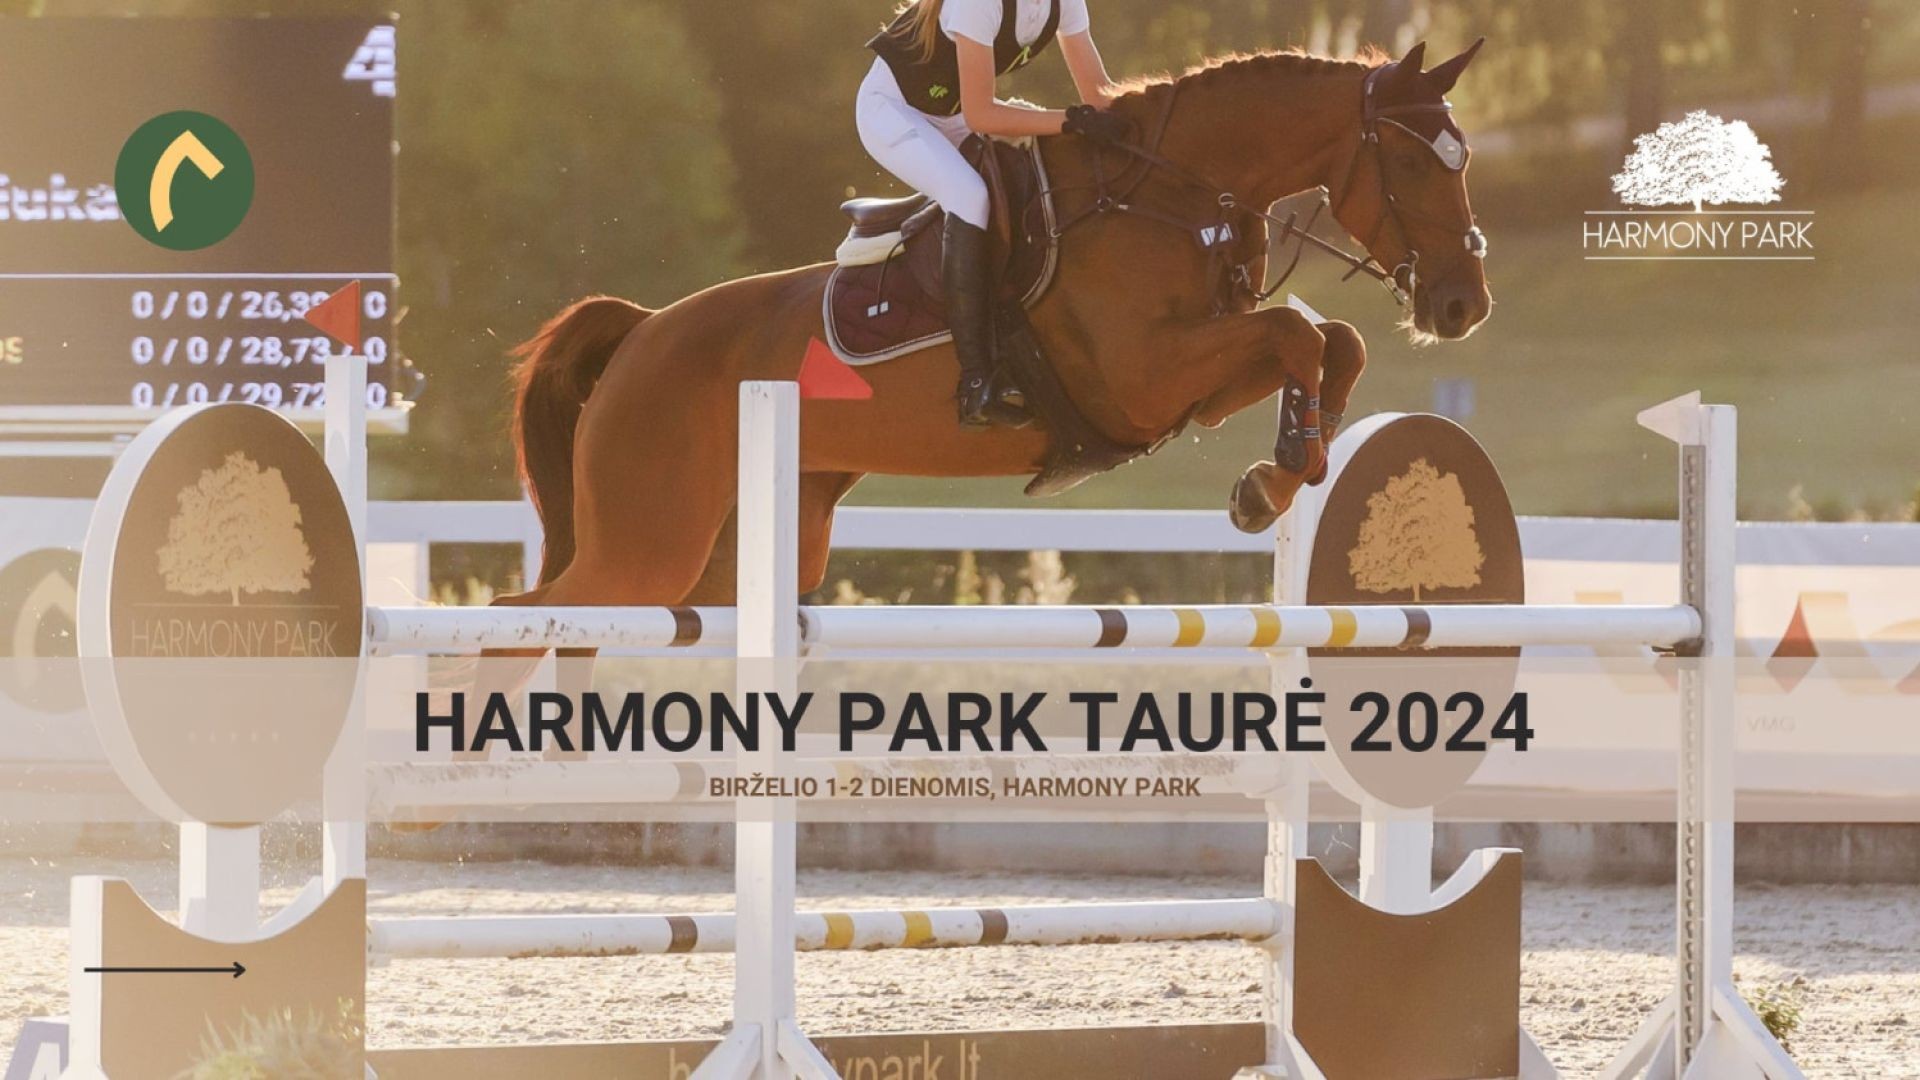 Harmony Park taurė 2024 LTU-2*